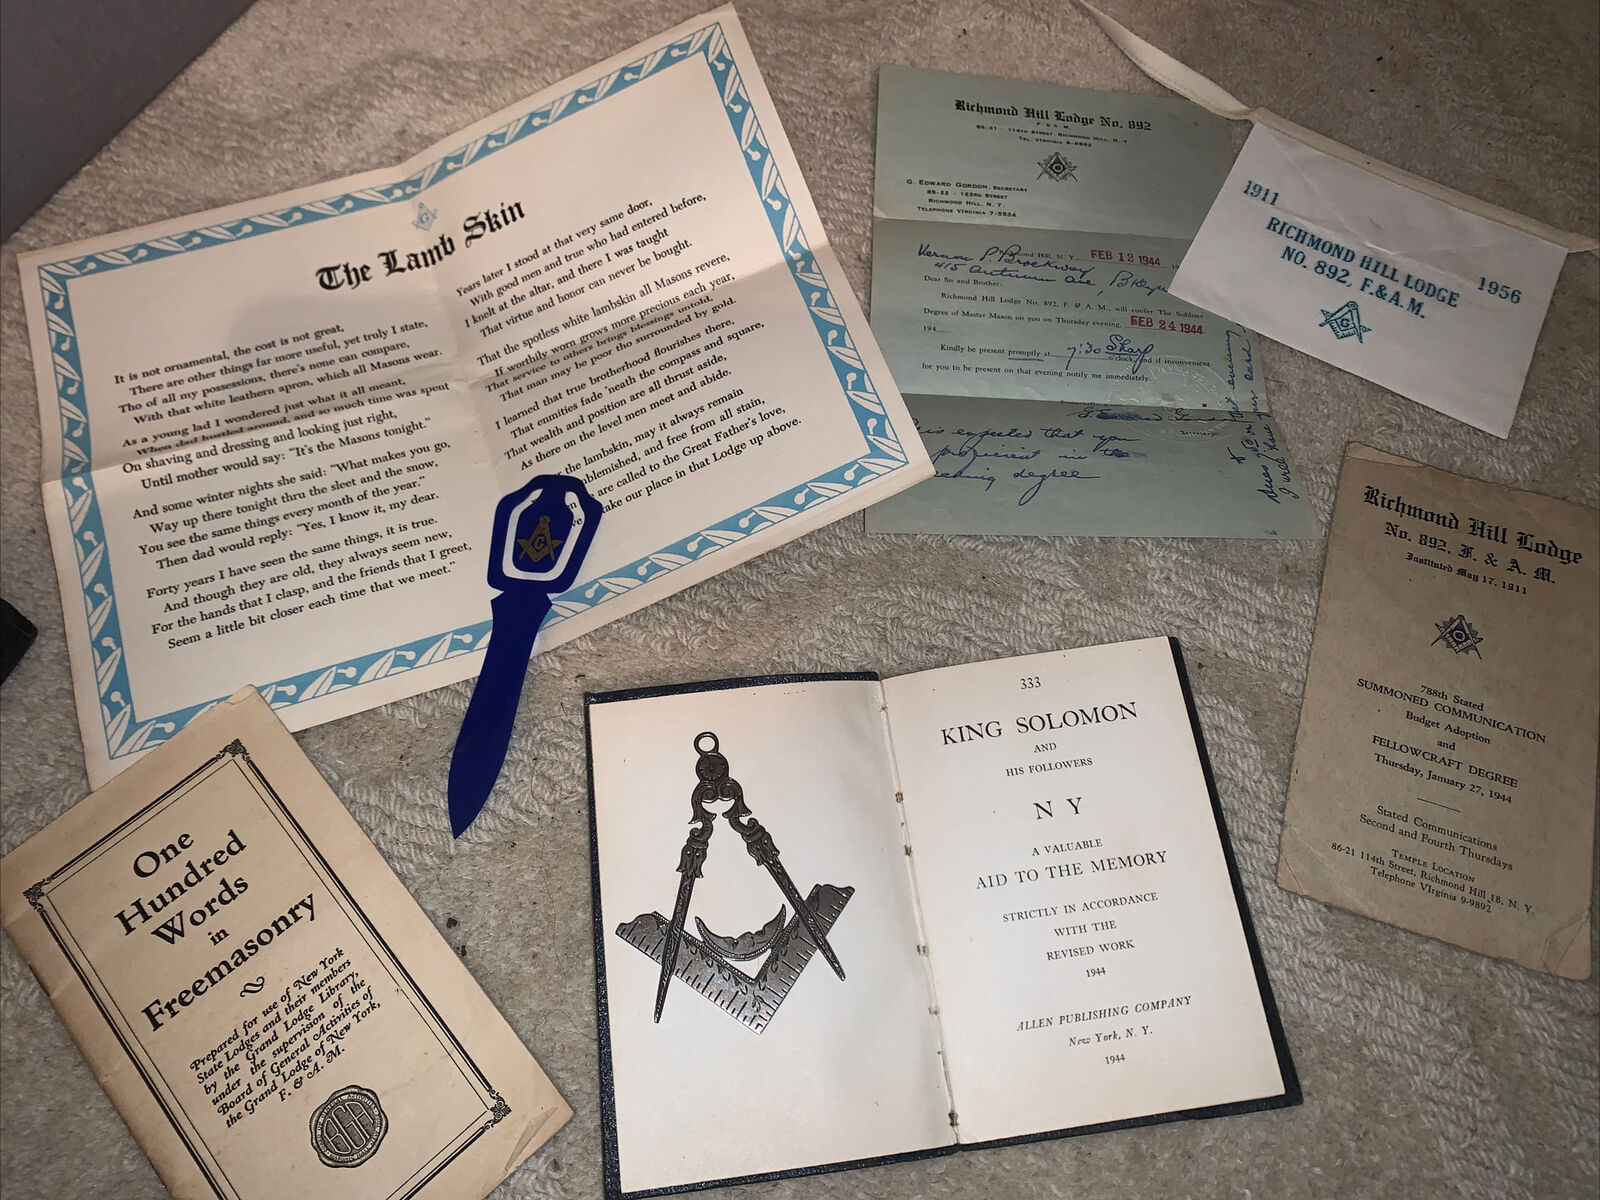 1944 Richmond Hill lodge￼ NO 892-Free-Masonry Book Masonic Signs & Oaths